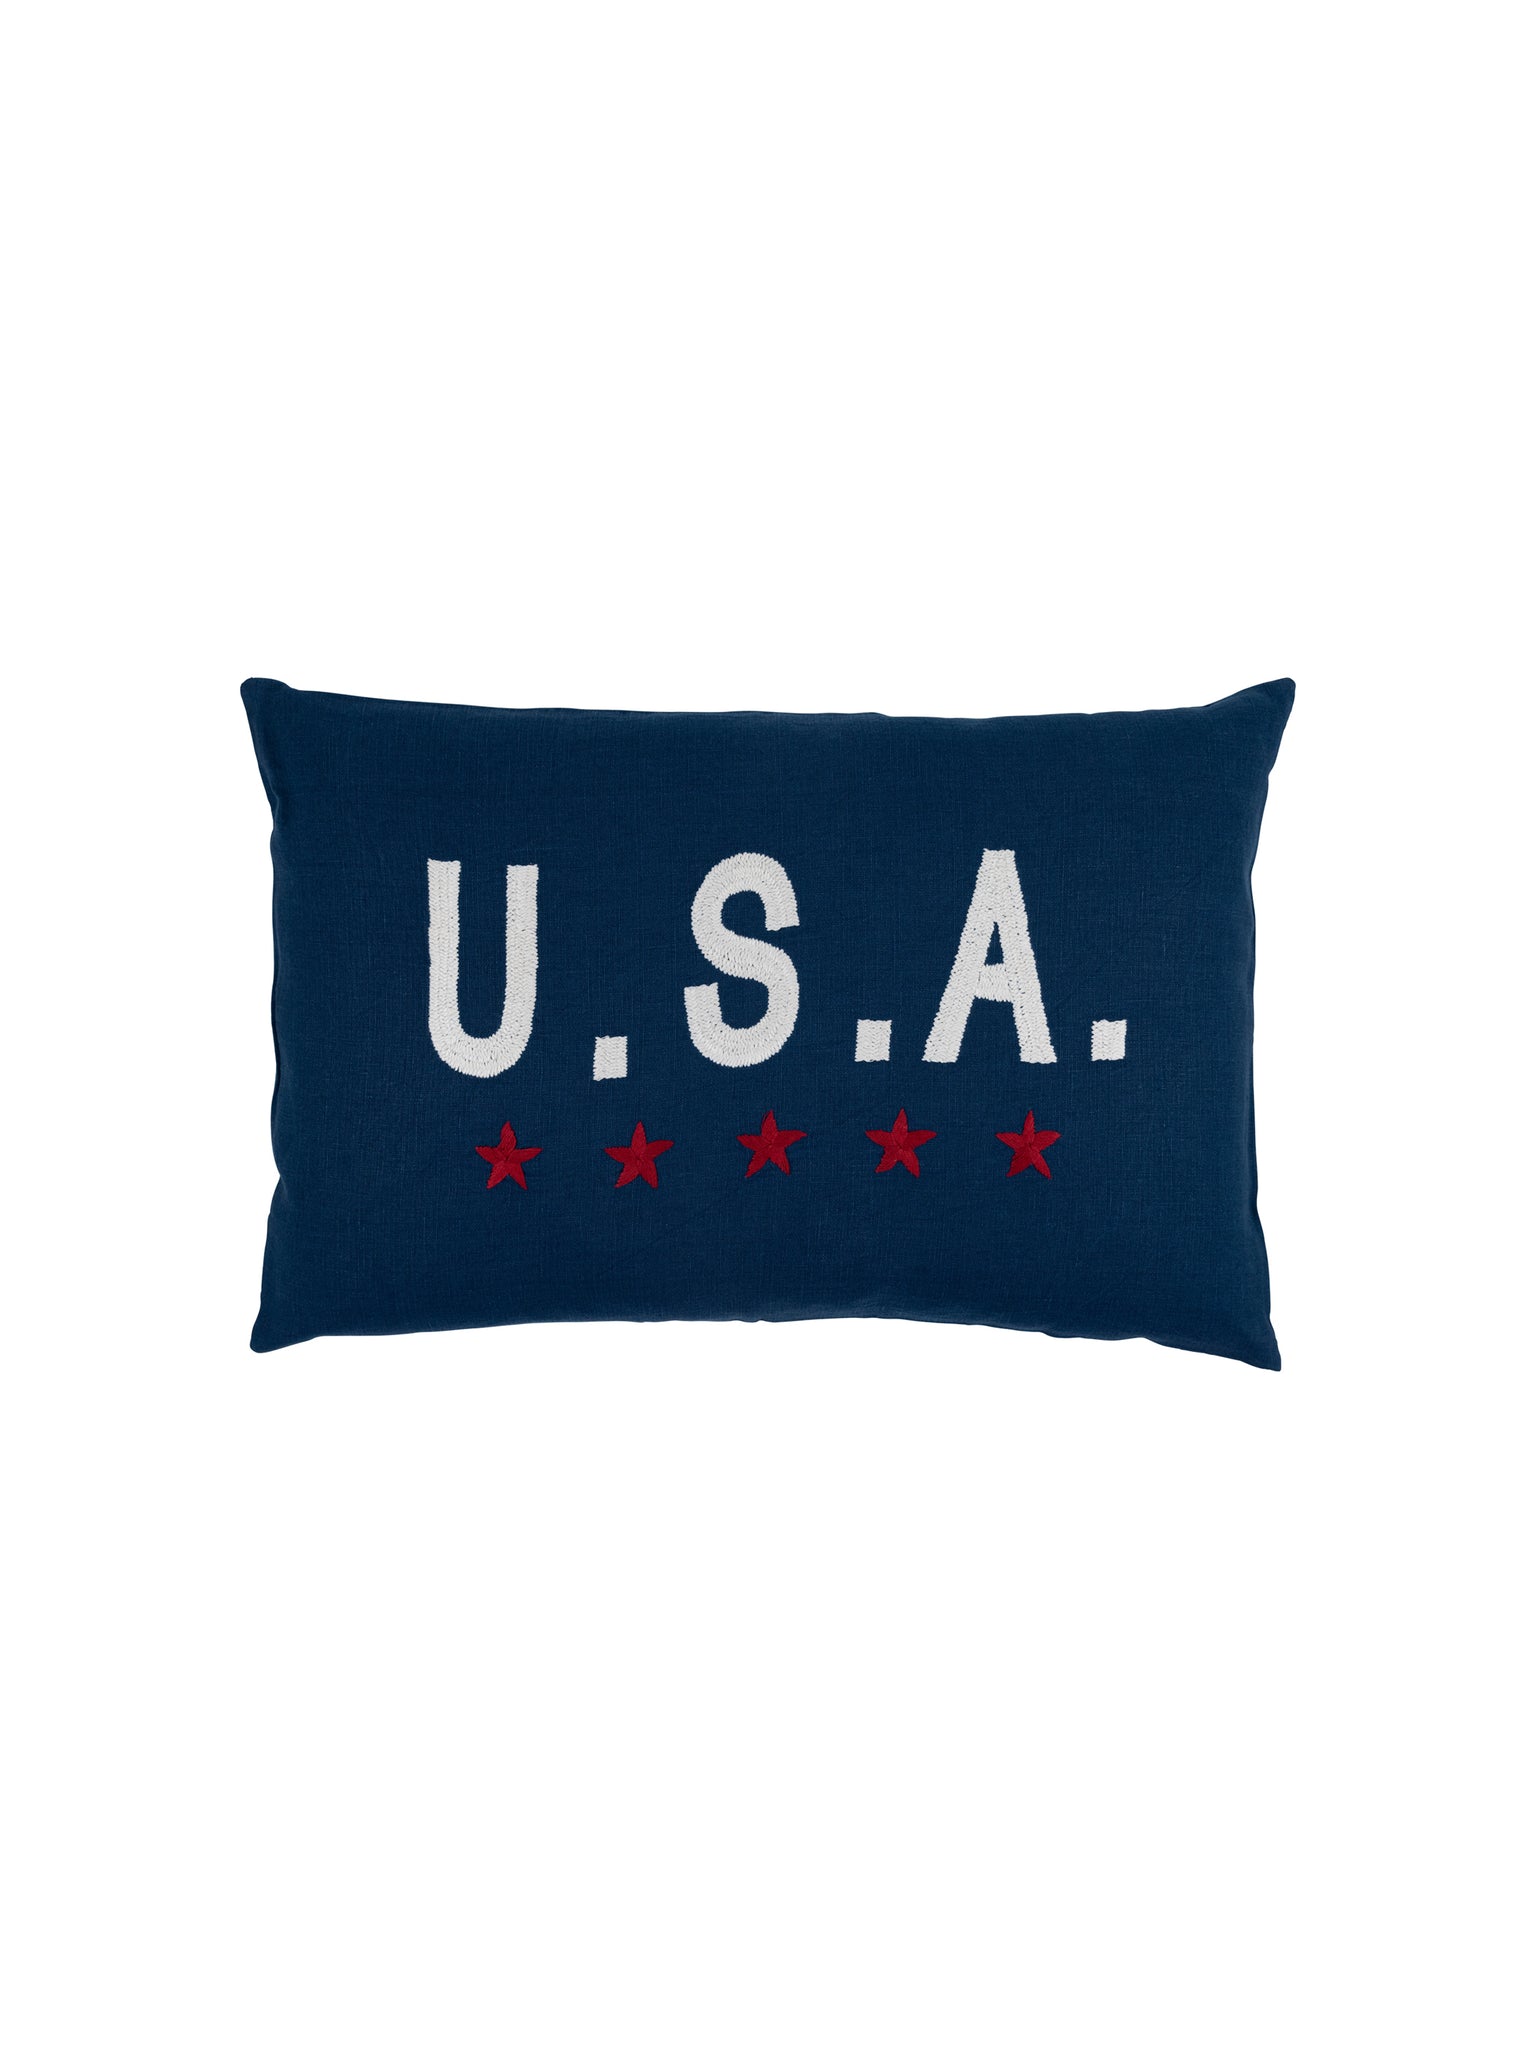 USA Navy Linen Throw Pillow Weston Table